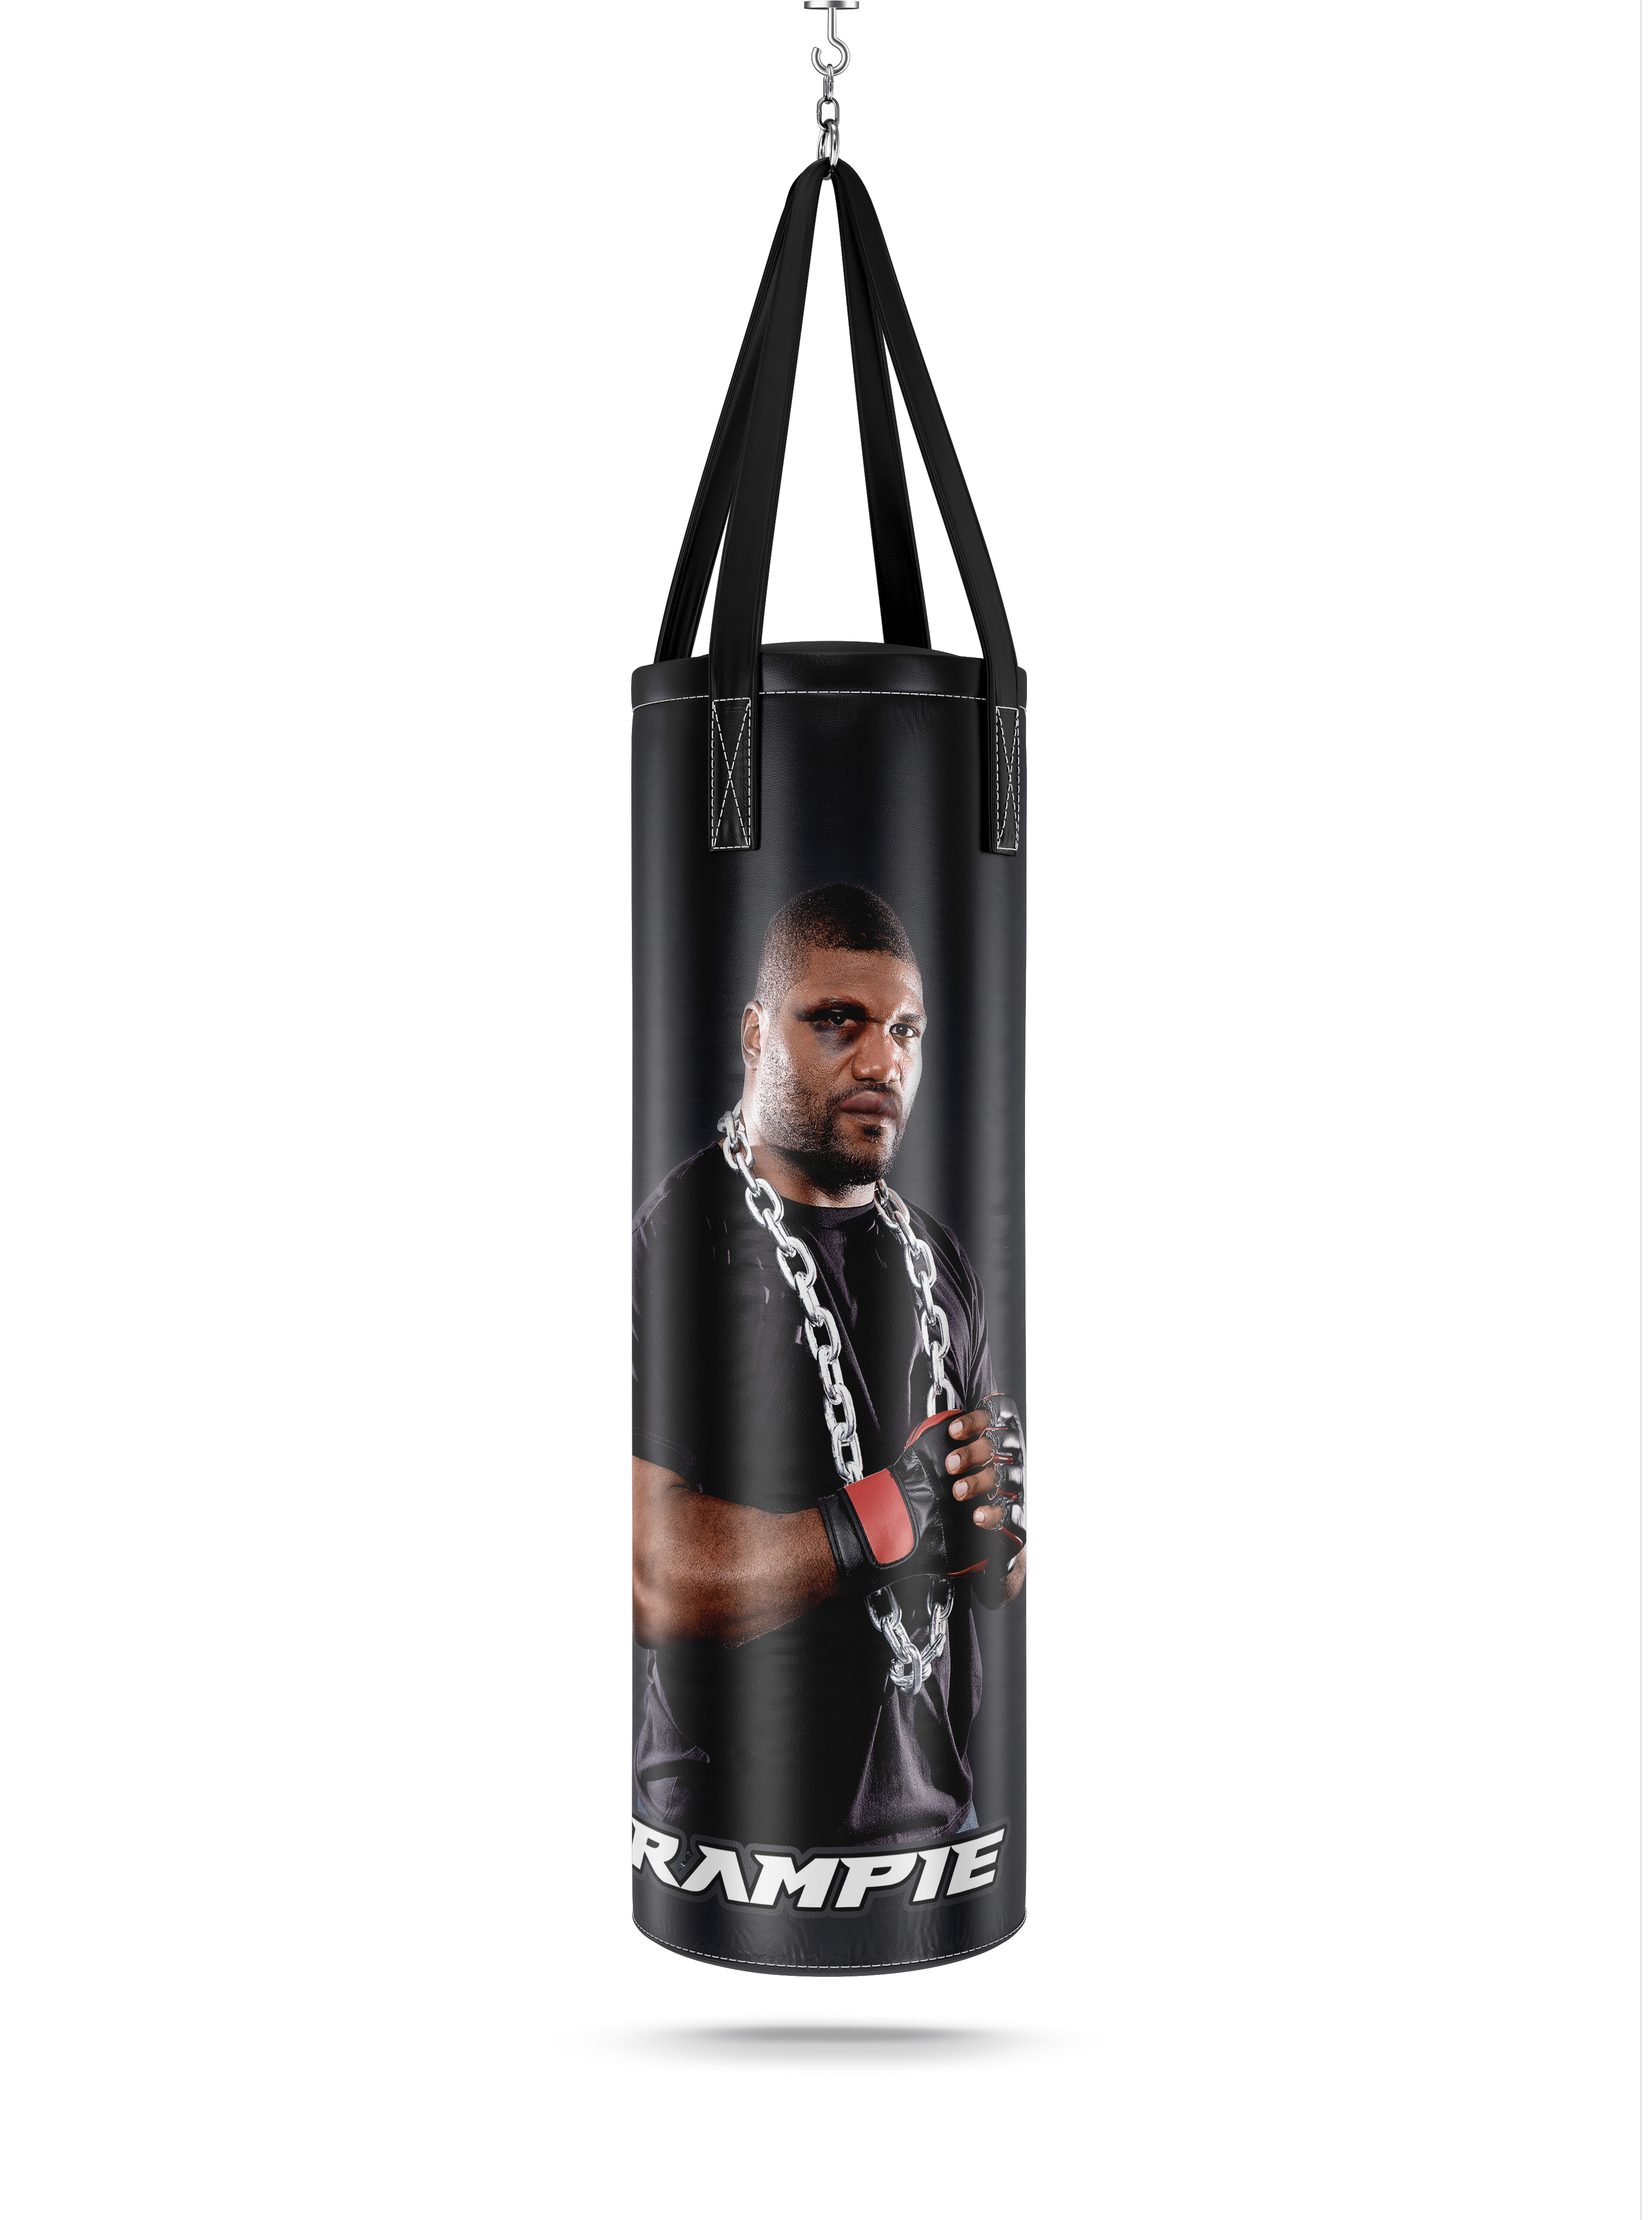 Punching bag 25kg 120x35 Ring - FighterShop